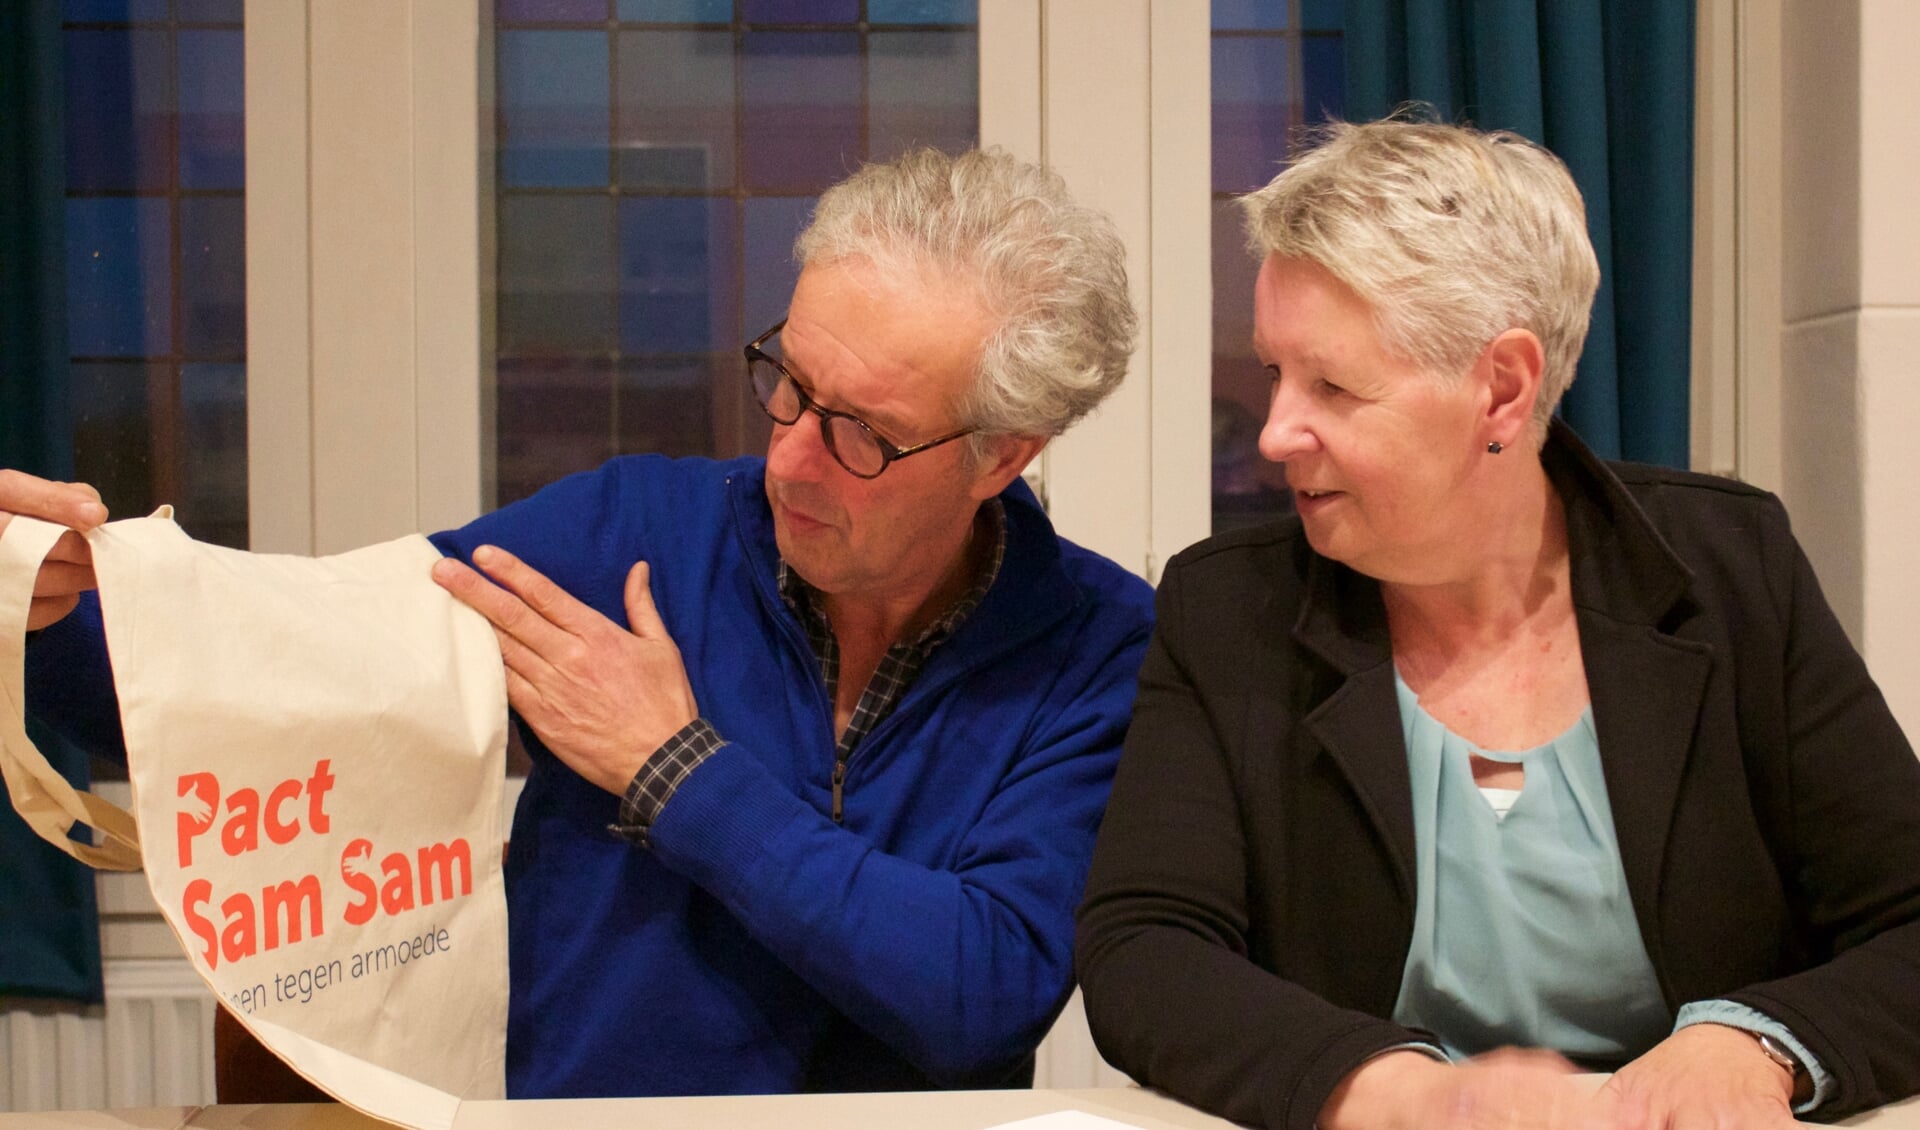 Joost Gruijters en Joke Koolhof nemen tijdens het netwerkcafe afscheid van Pact Sam Sam